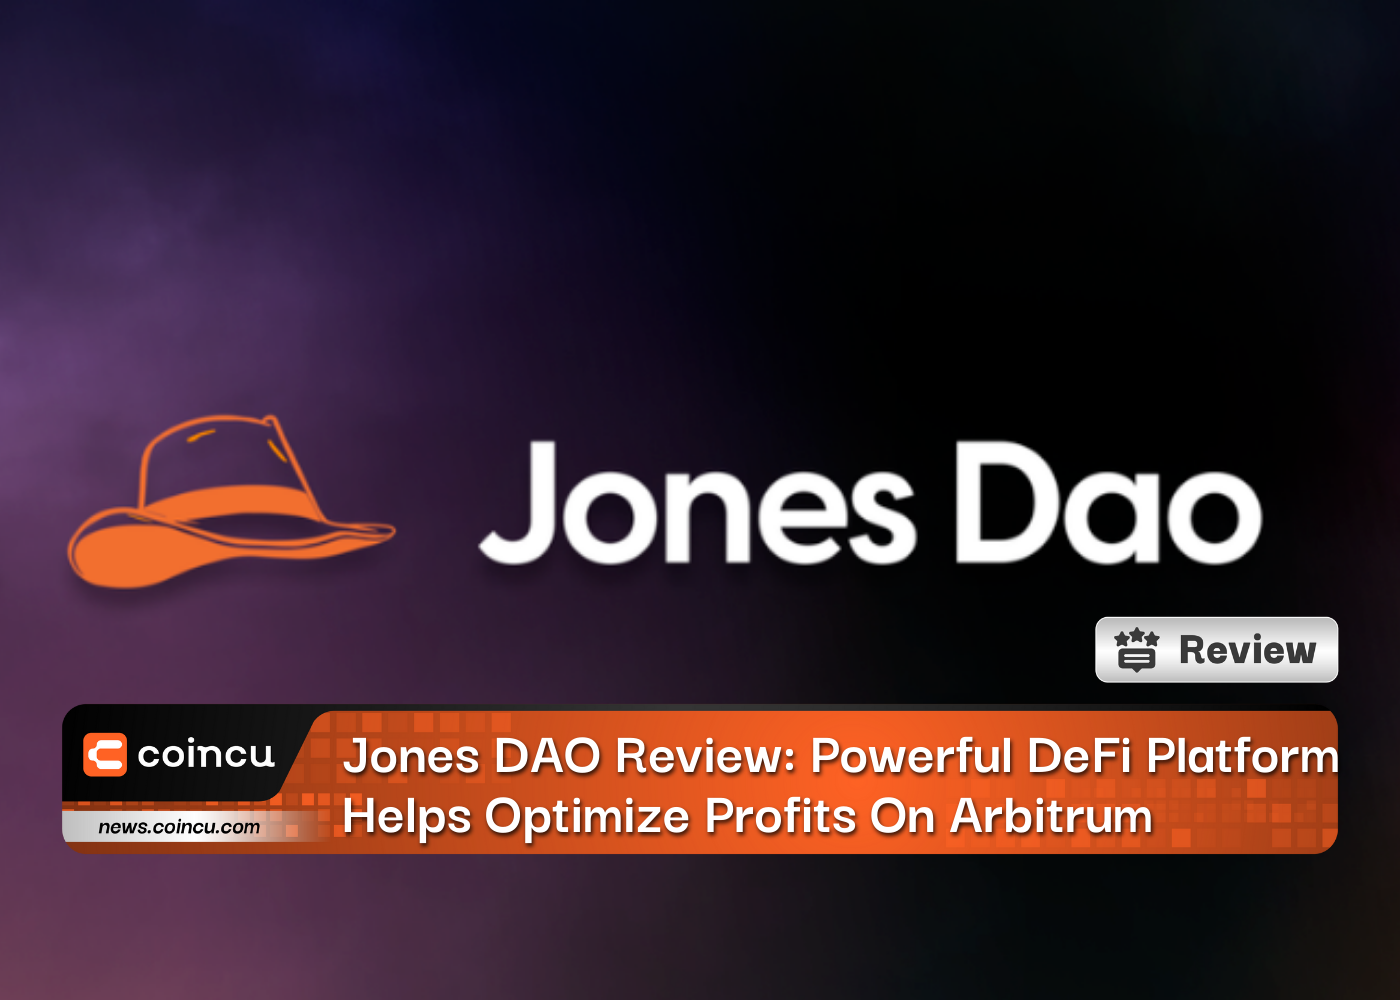 Revue Jones DAO : la puissante plate-forme DeFi aide à optimiser les bénéfices sur l'arbitrage